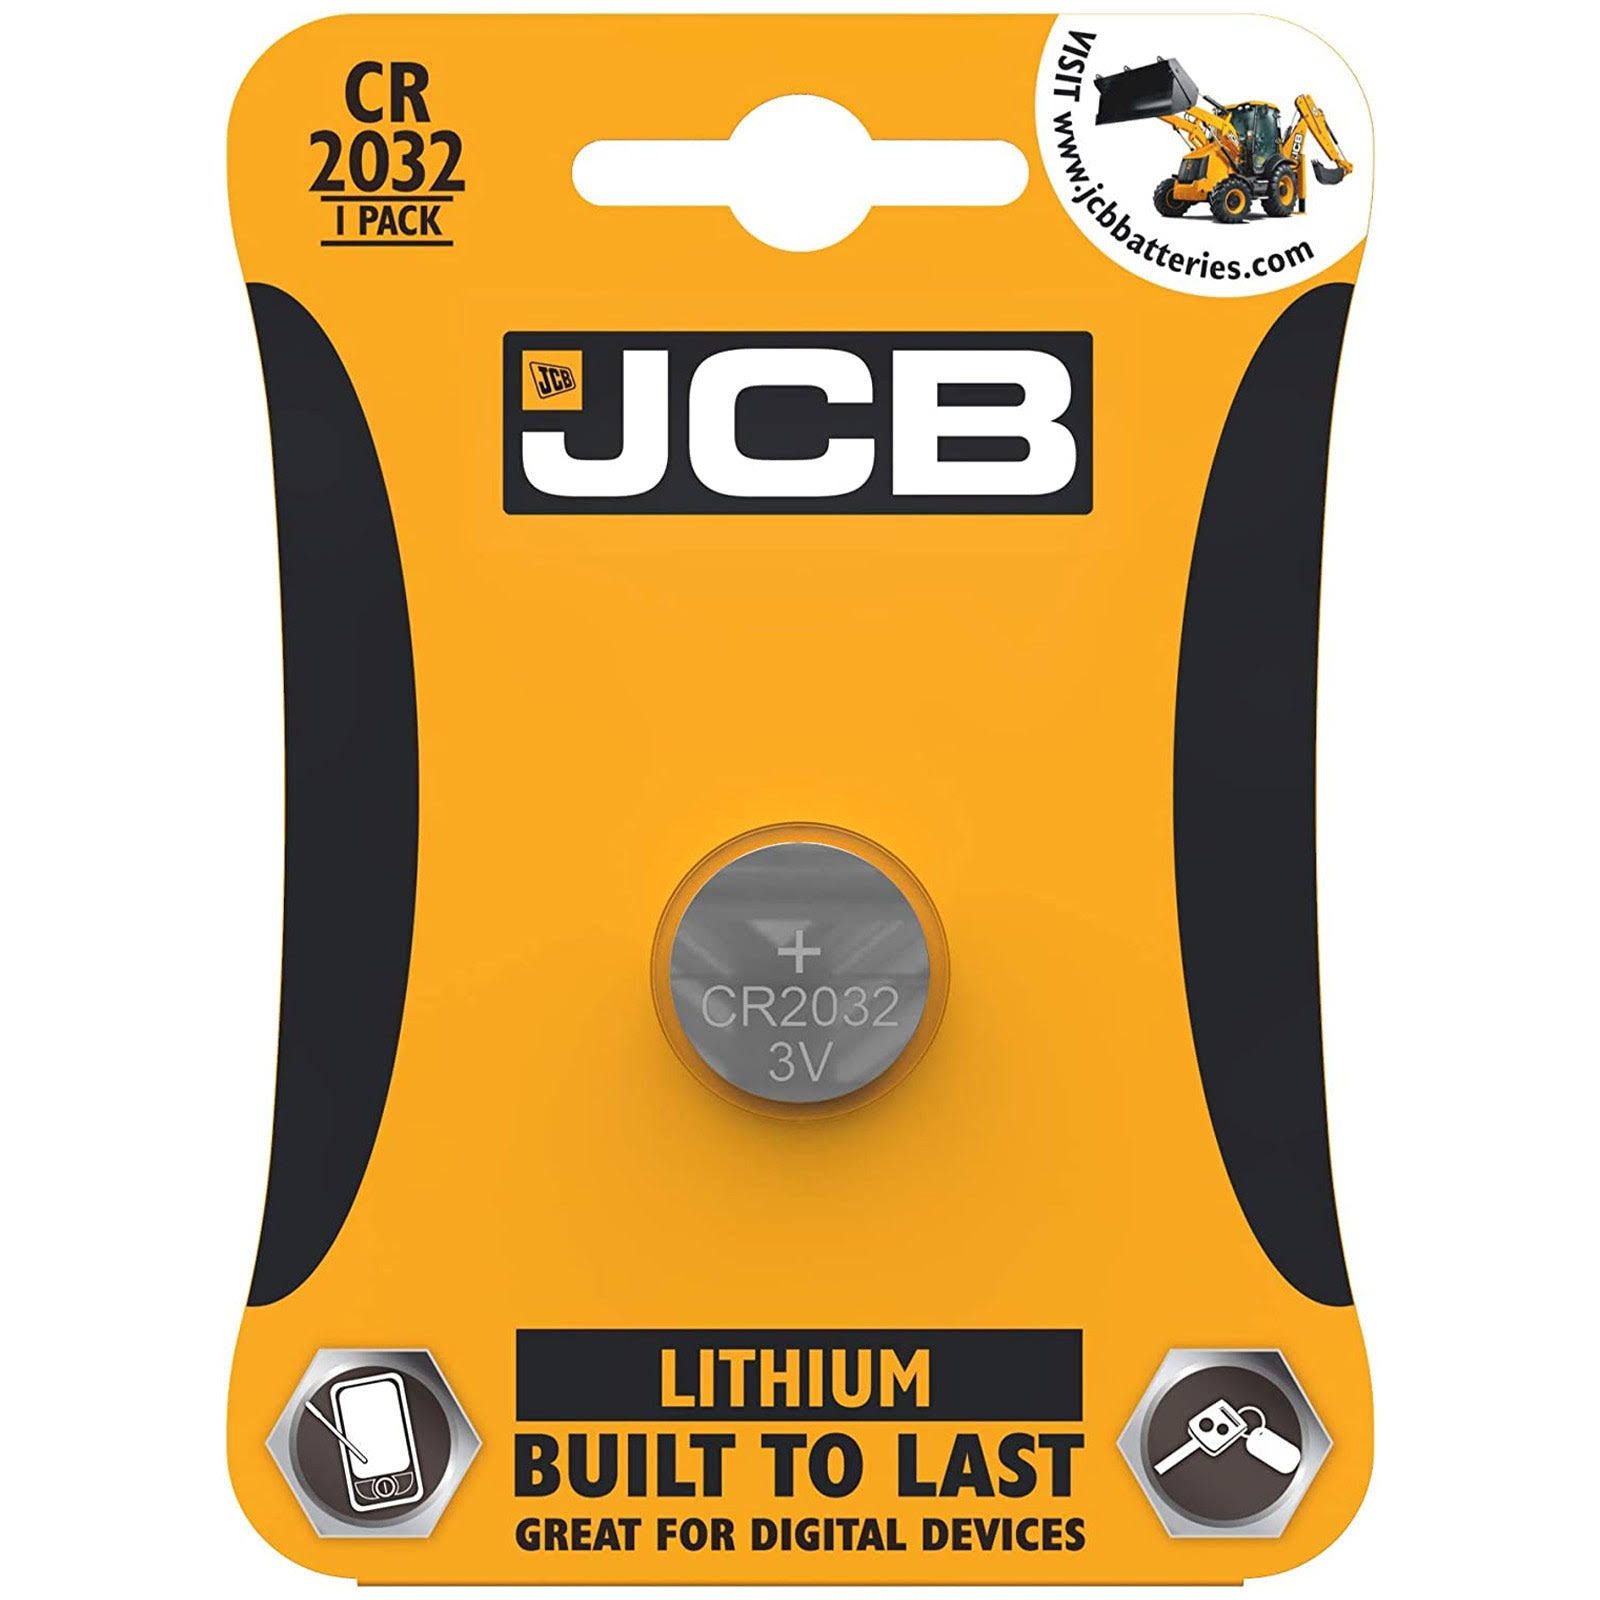 JCB Lithium Battery - CR2032